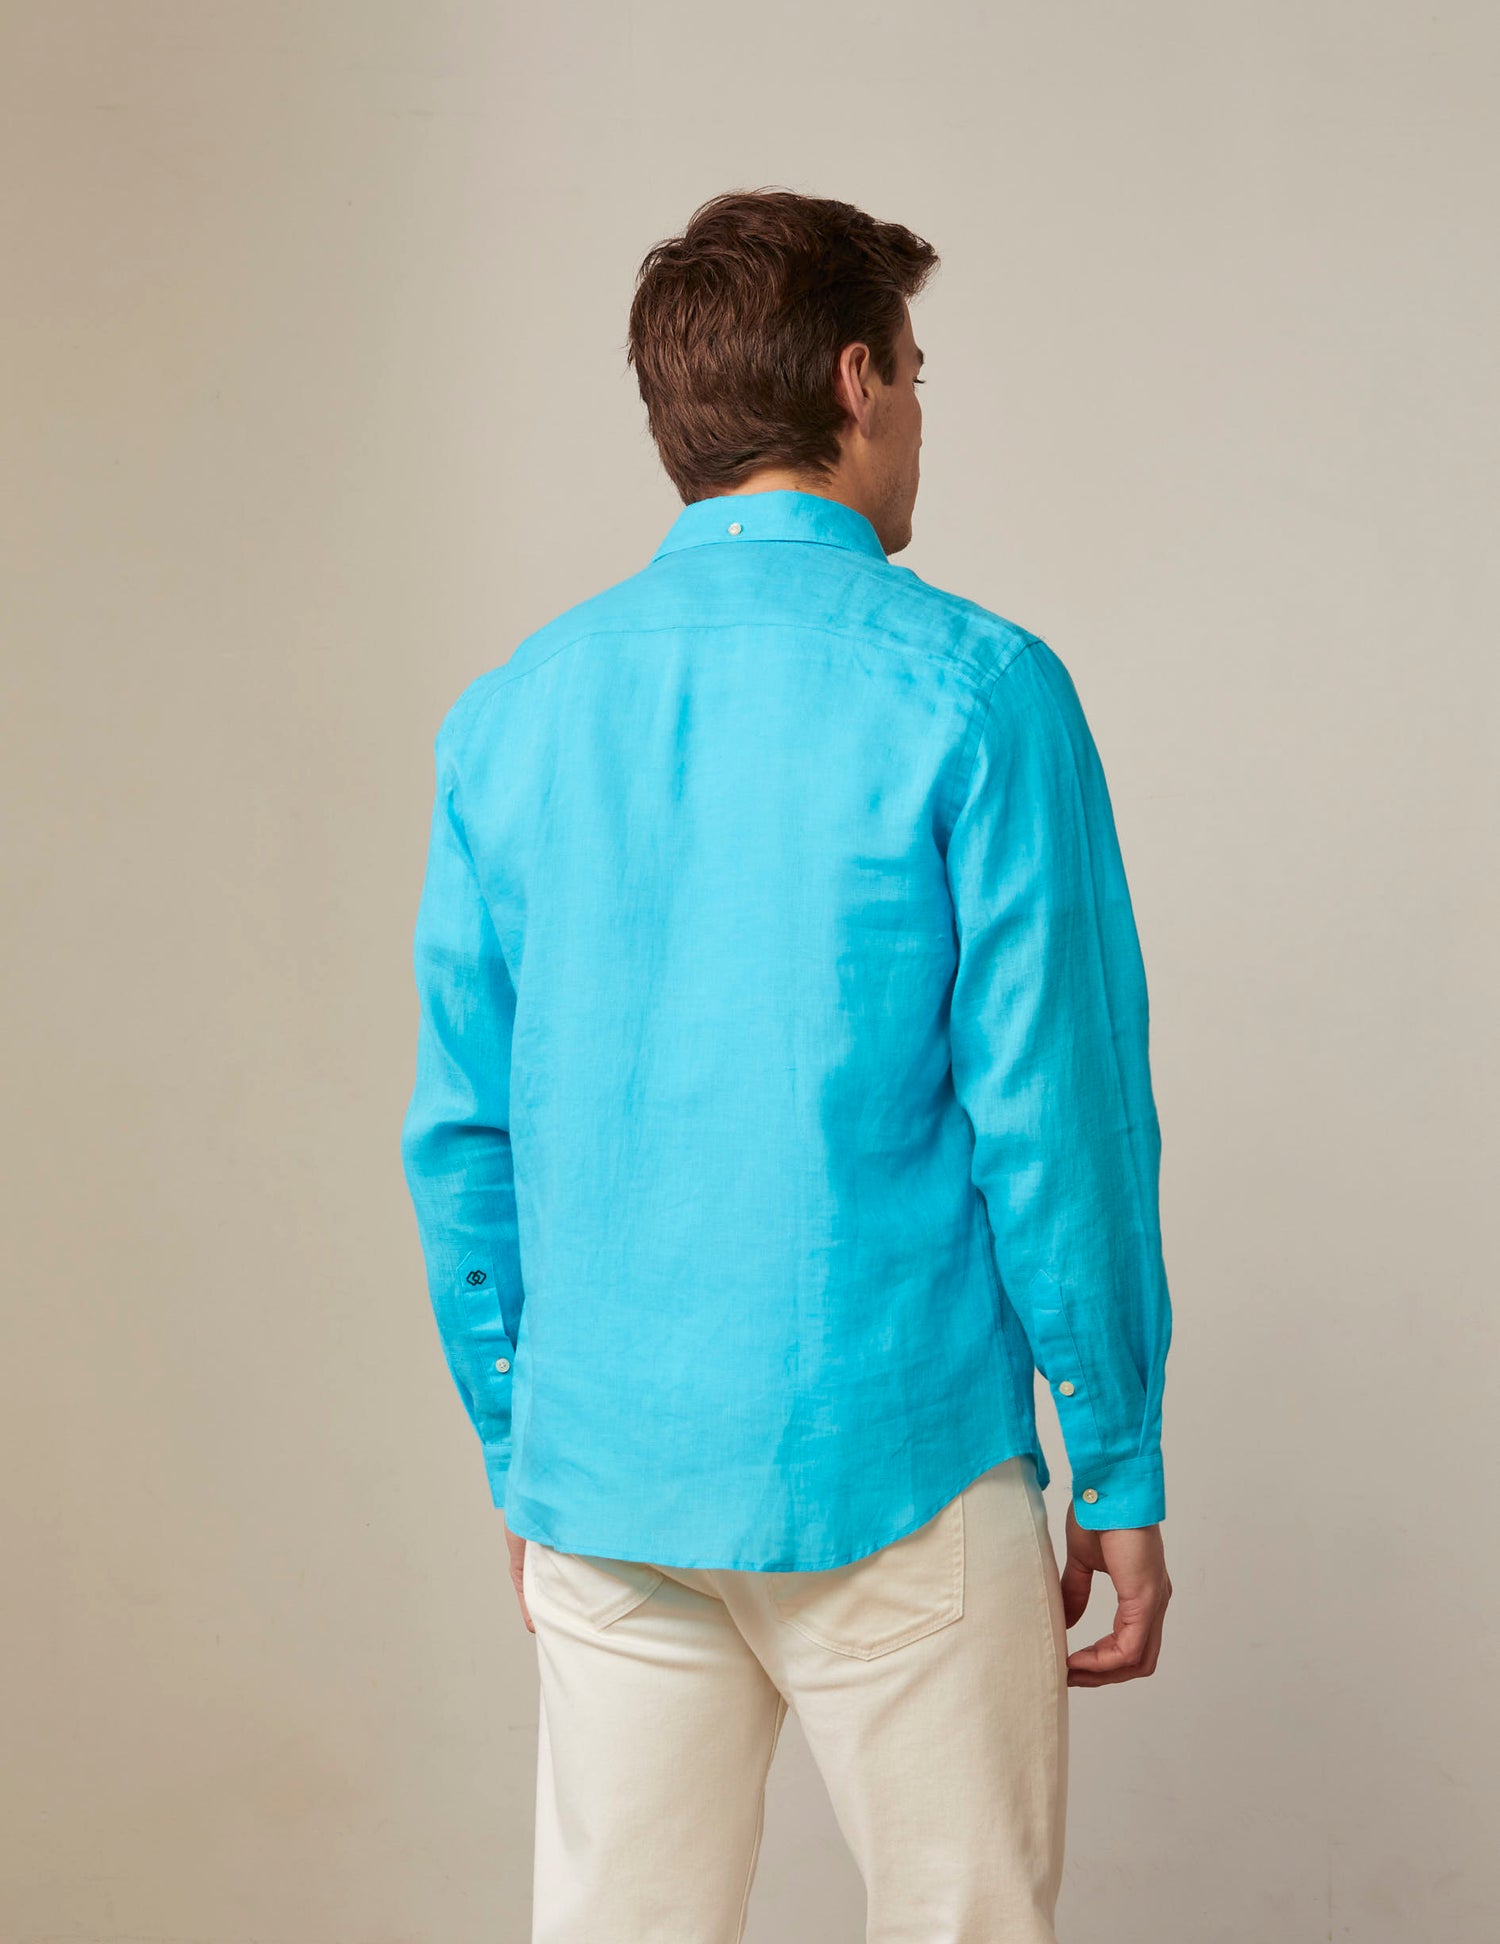 Aristote shirt in turquoise linen - Linen - Italian Collar#2